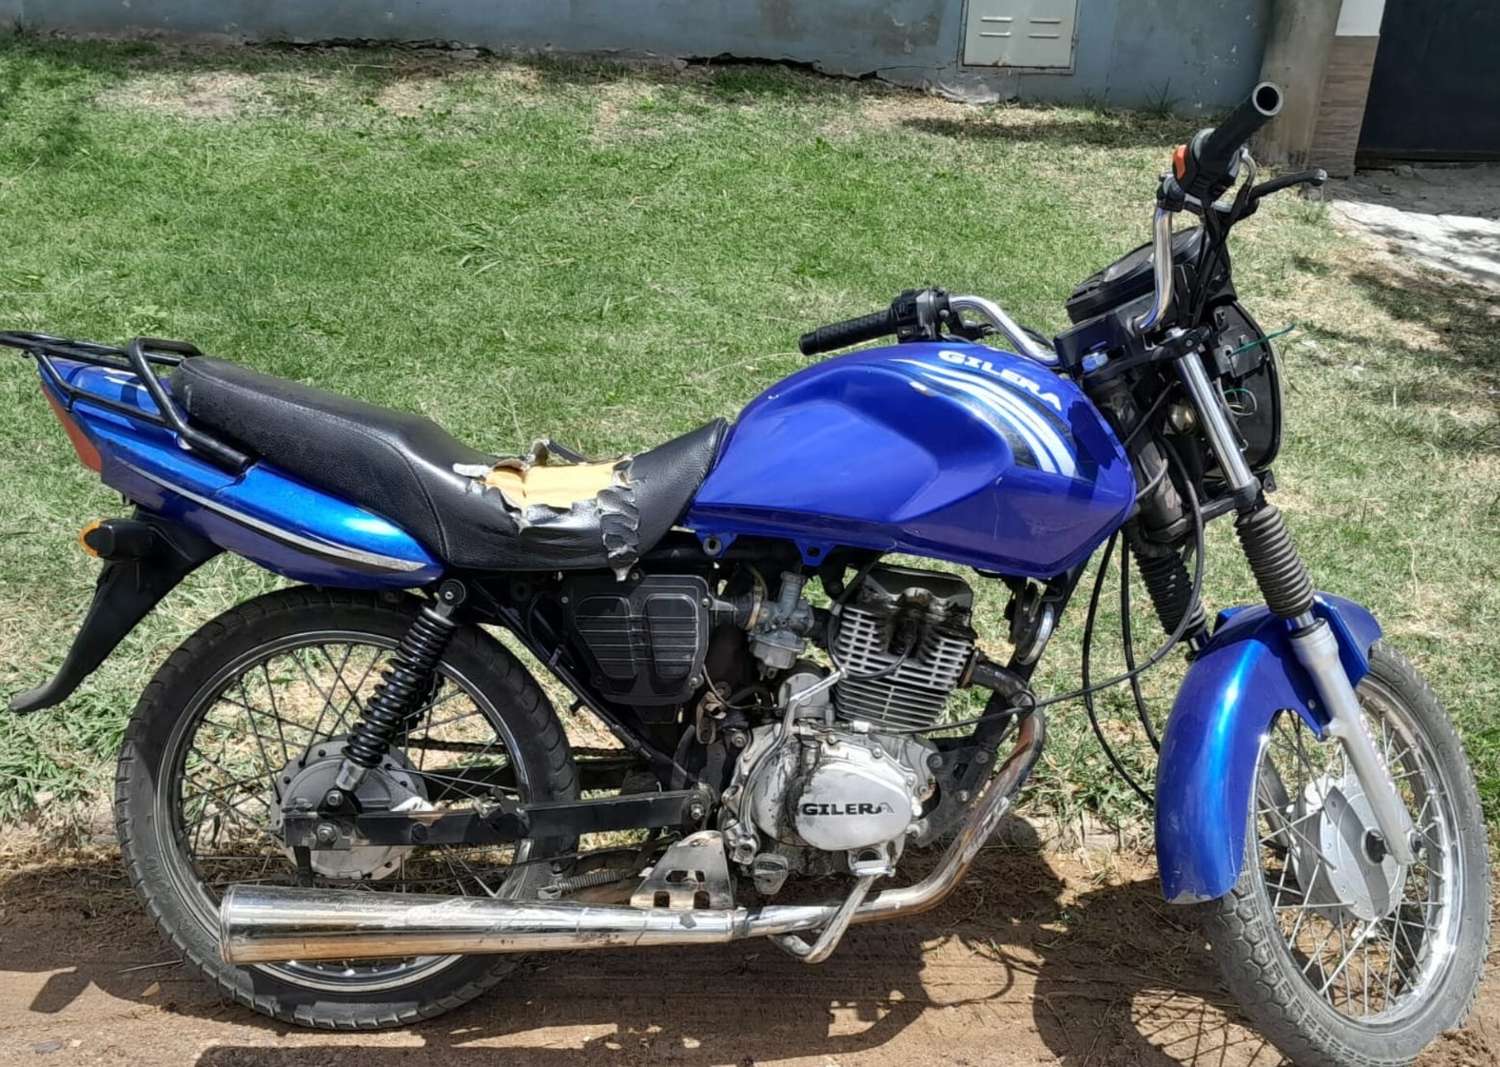 Se recuperó una moto robada y se identificó al ladrón